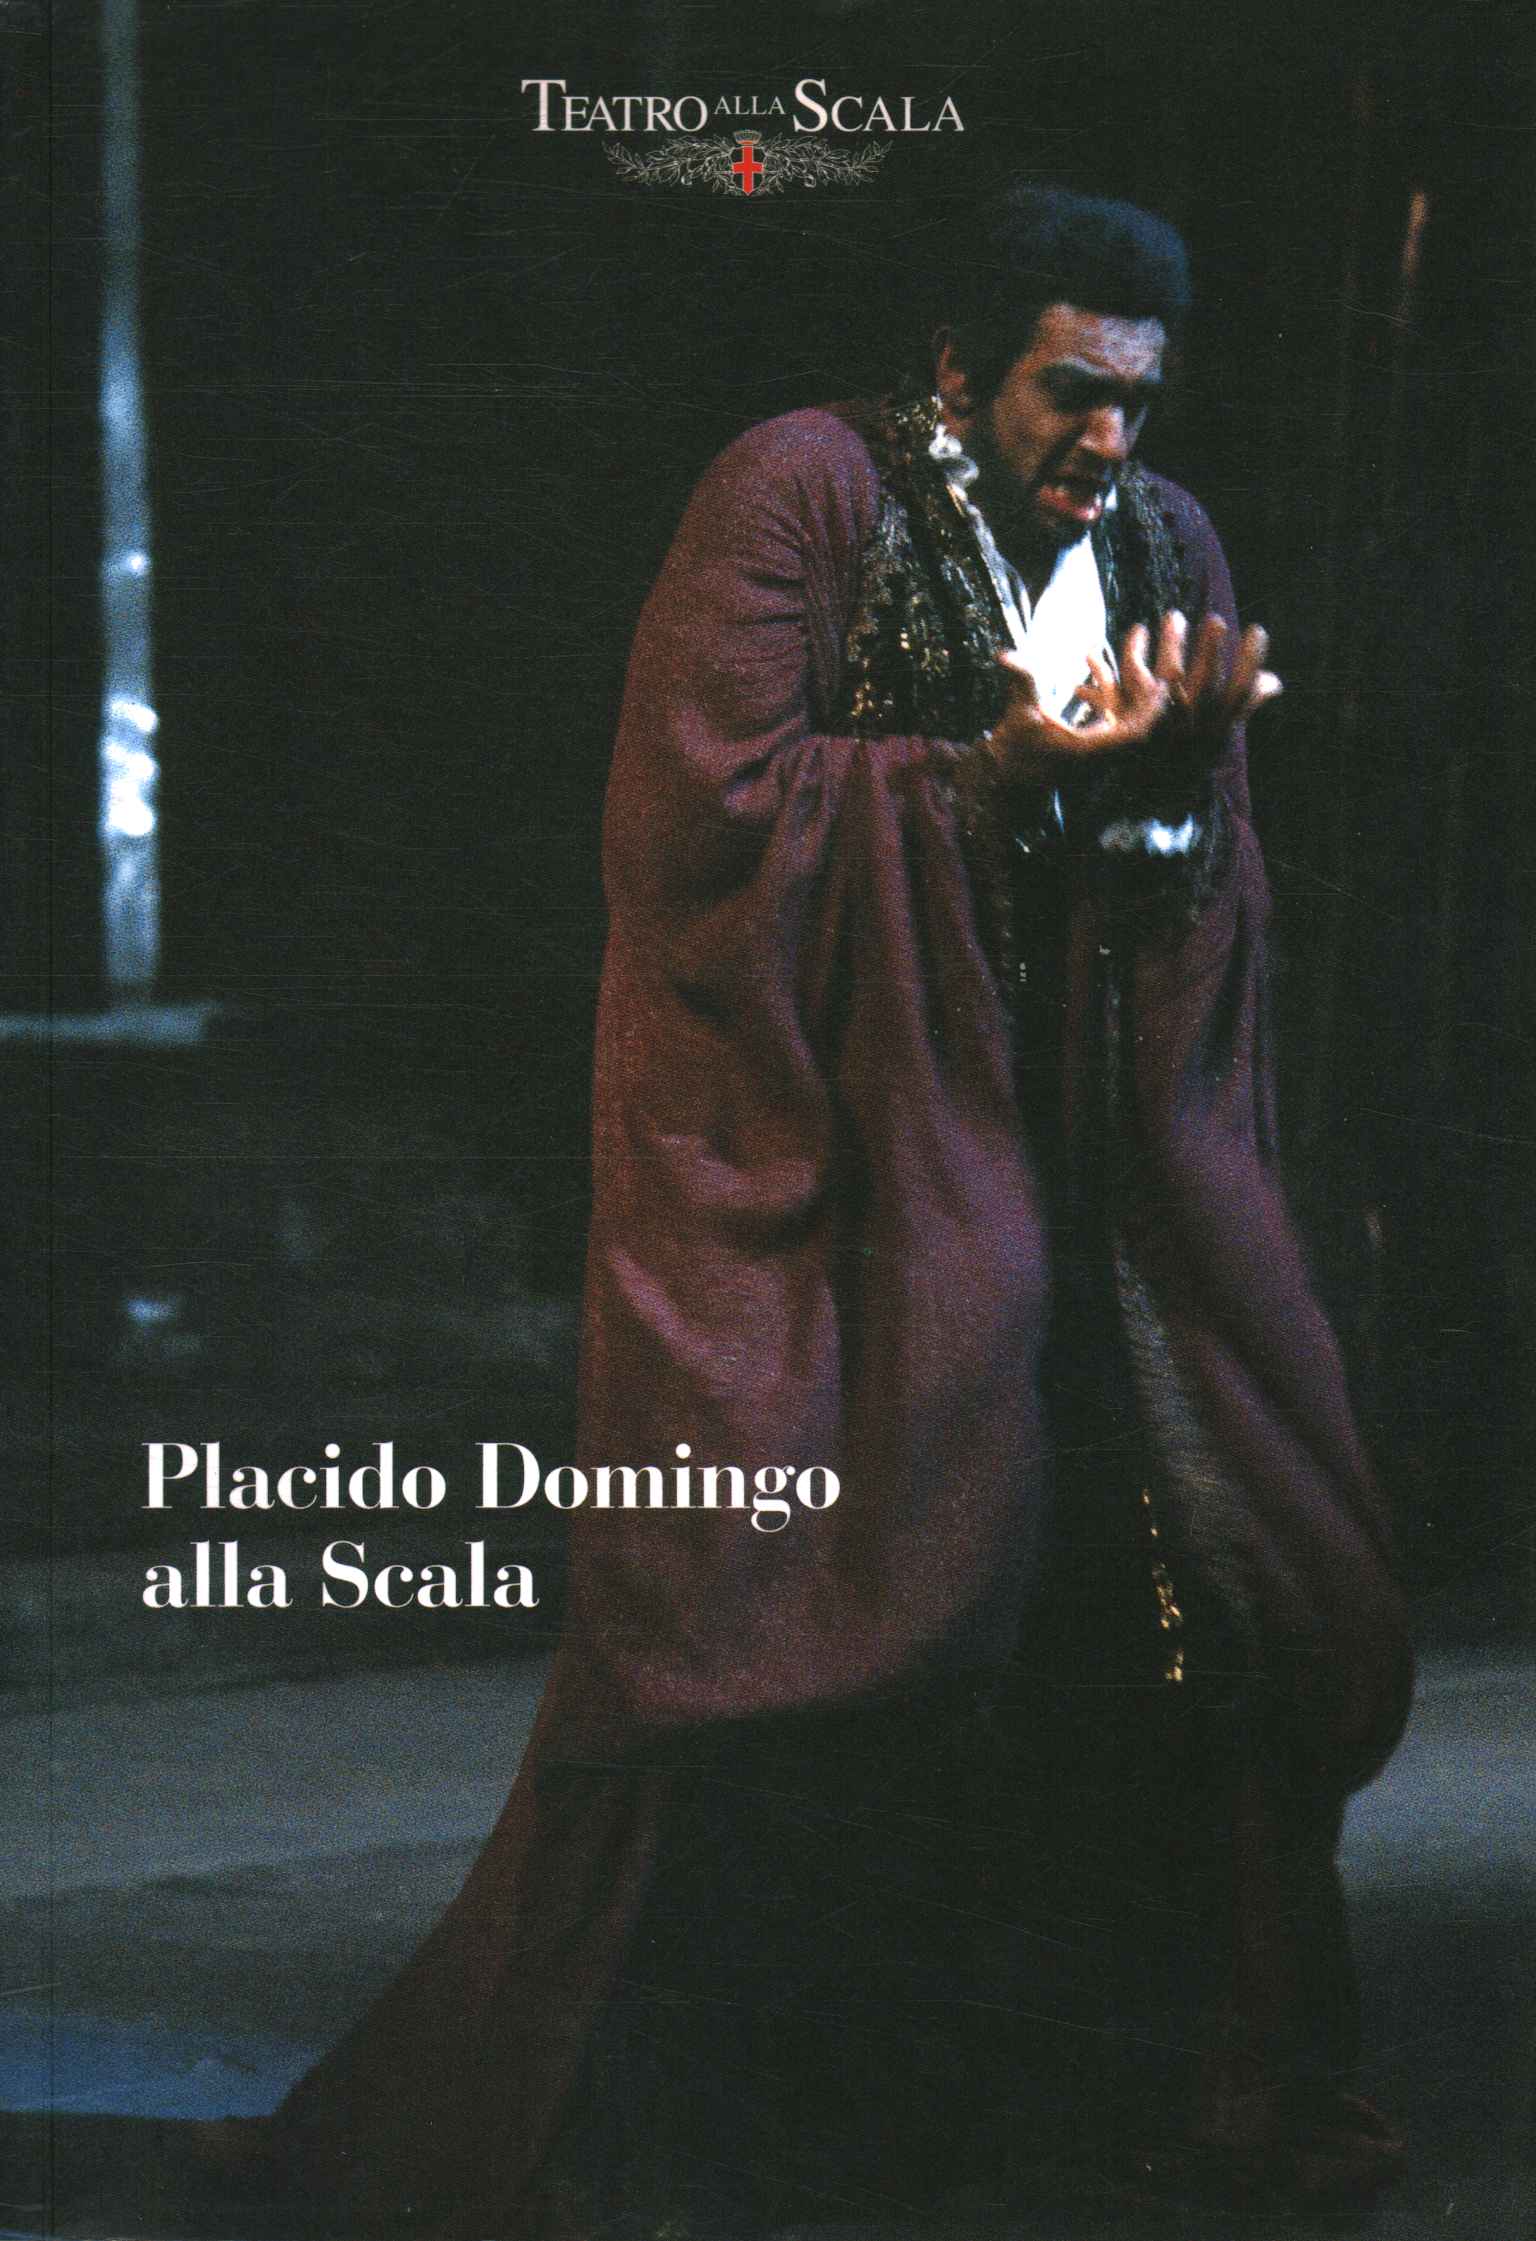 Placido Domingo at La Scala